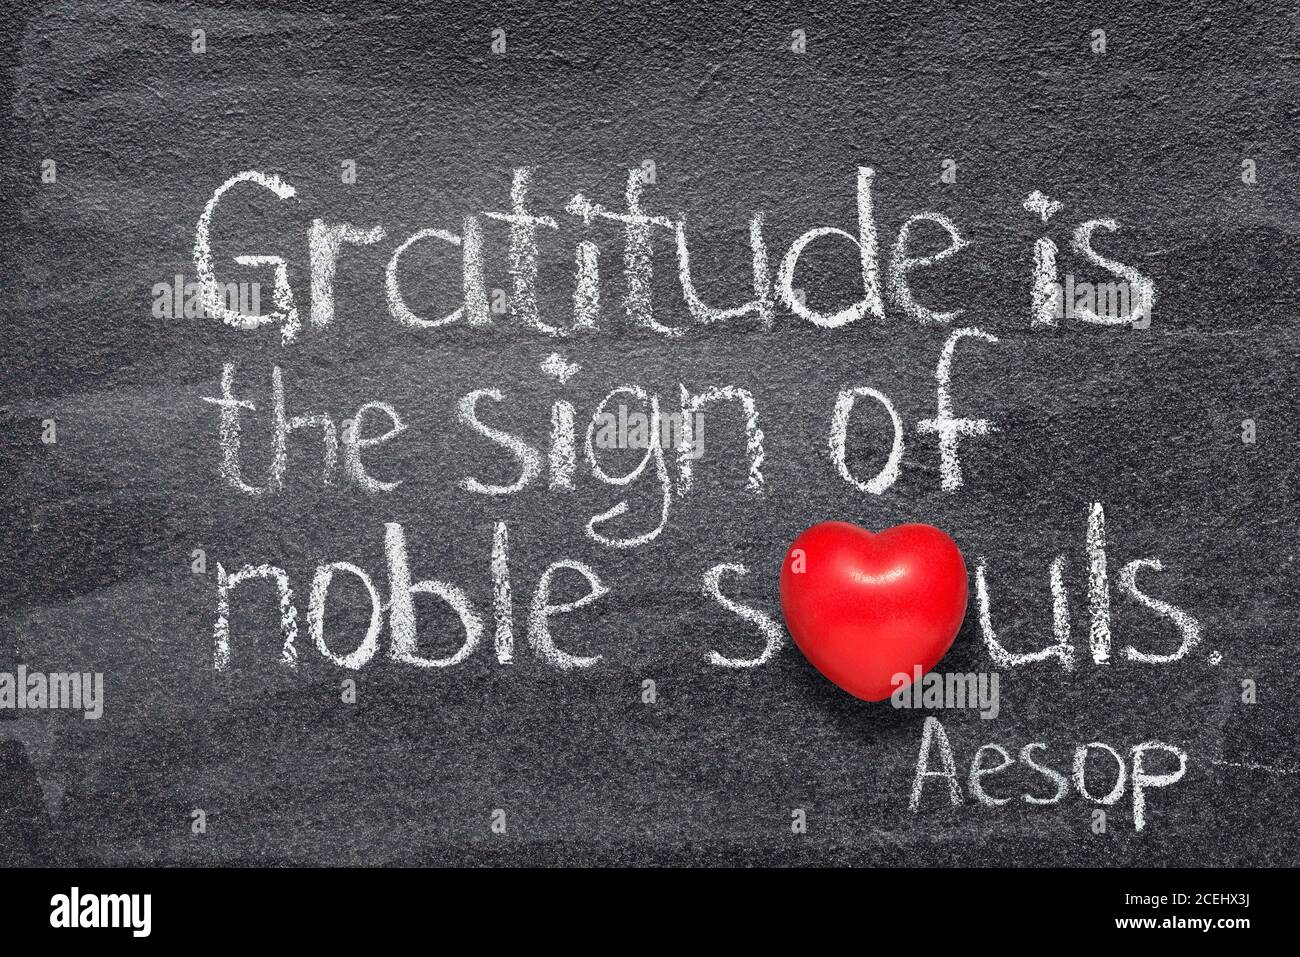 Dankbarkeit ist das Zeichen edler Seelen - Zitat von Altgriechischer Geschichtenerzähler Aesop auf Kreidetafel mit Rot geschrieben Herz statt O Stockfoto